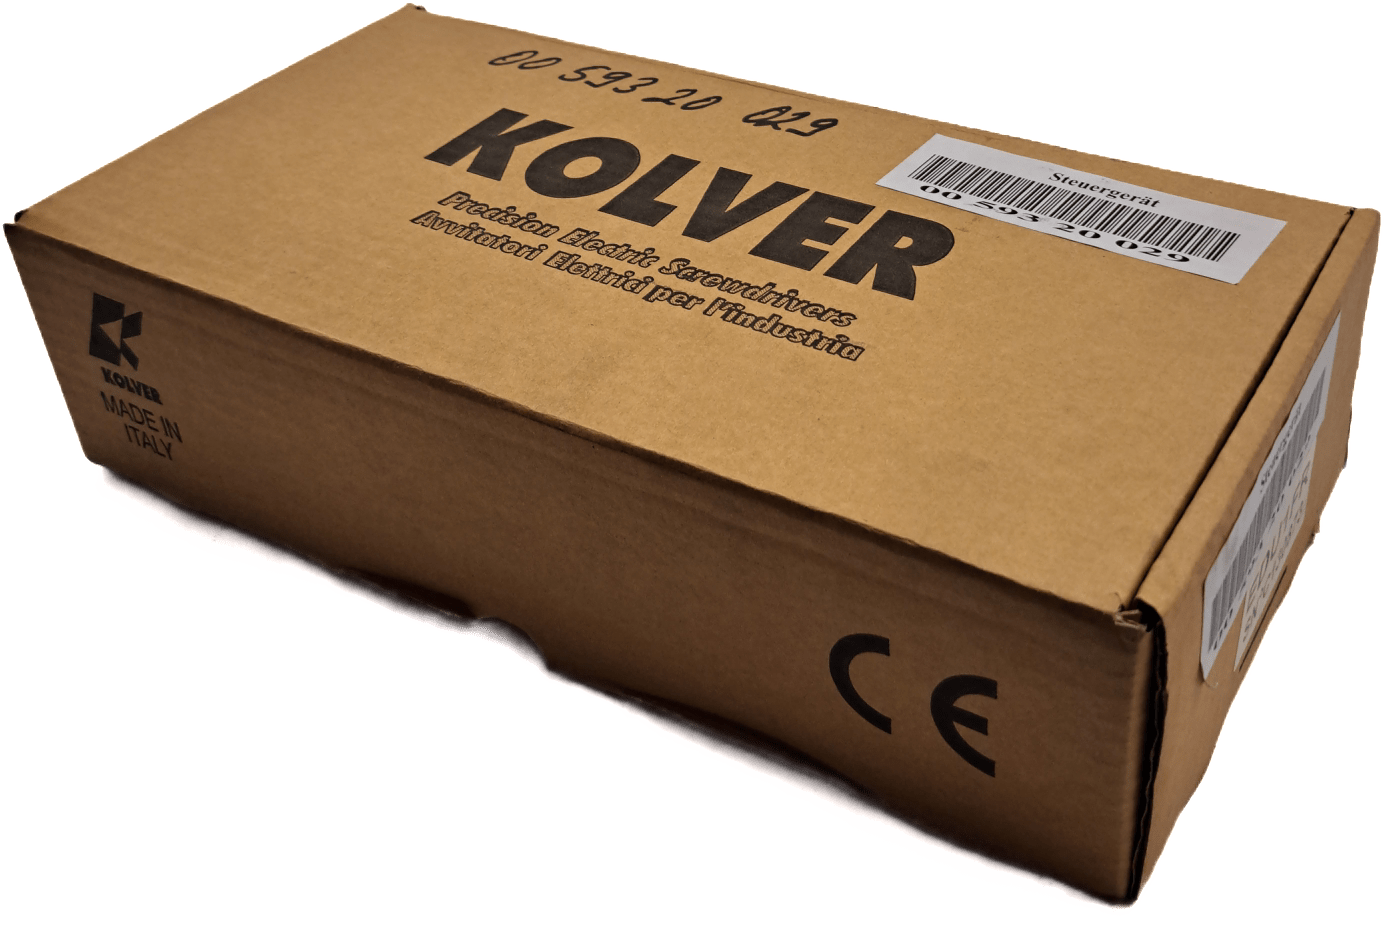 Kolver Steuergerät EDU 1FR - #product_category# | Klenk Maschinenhandel